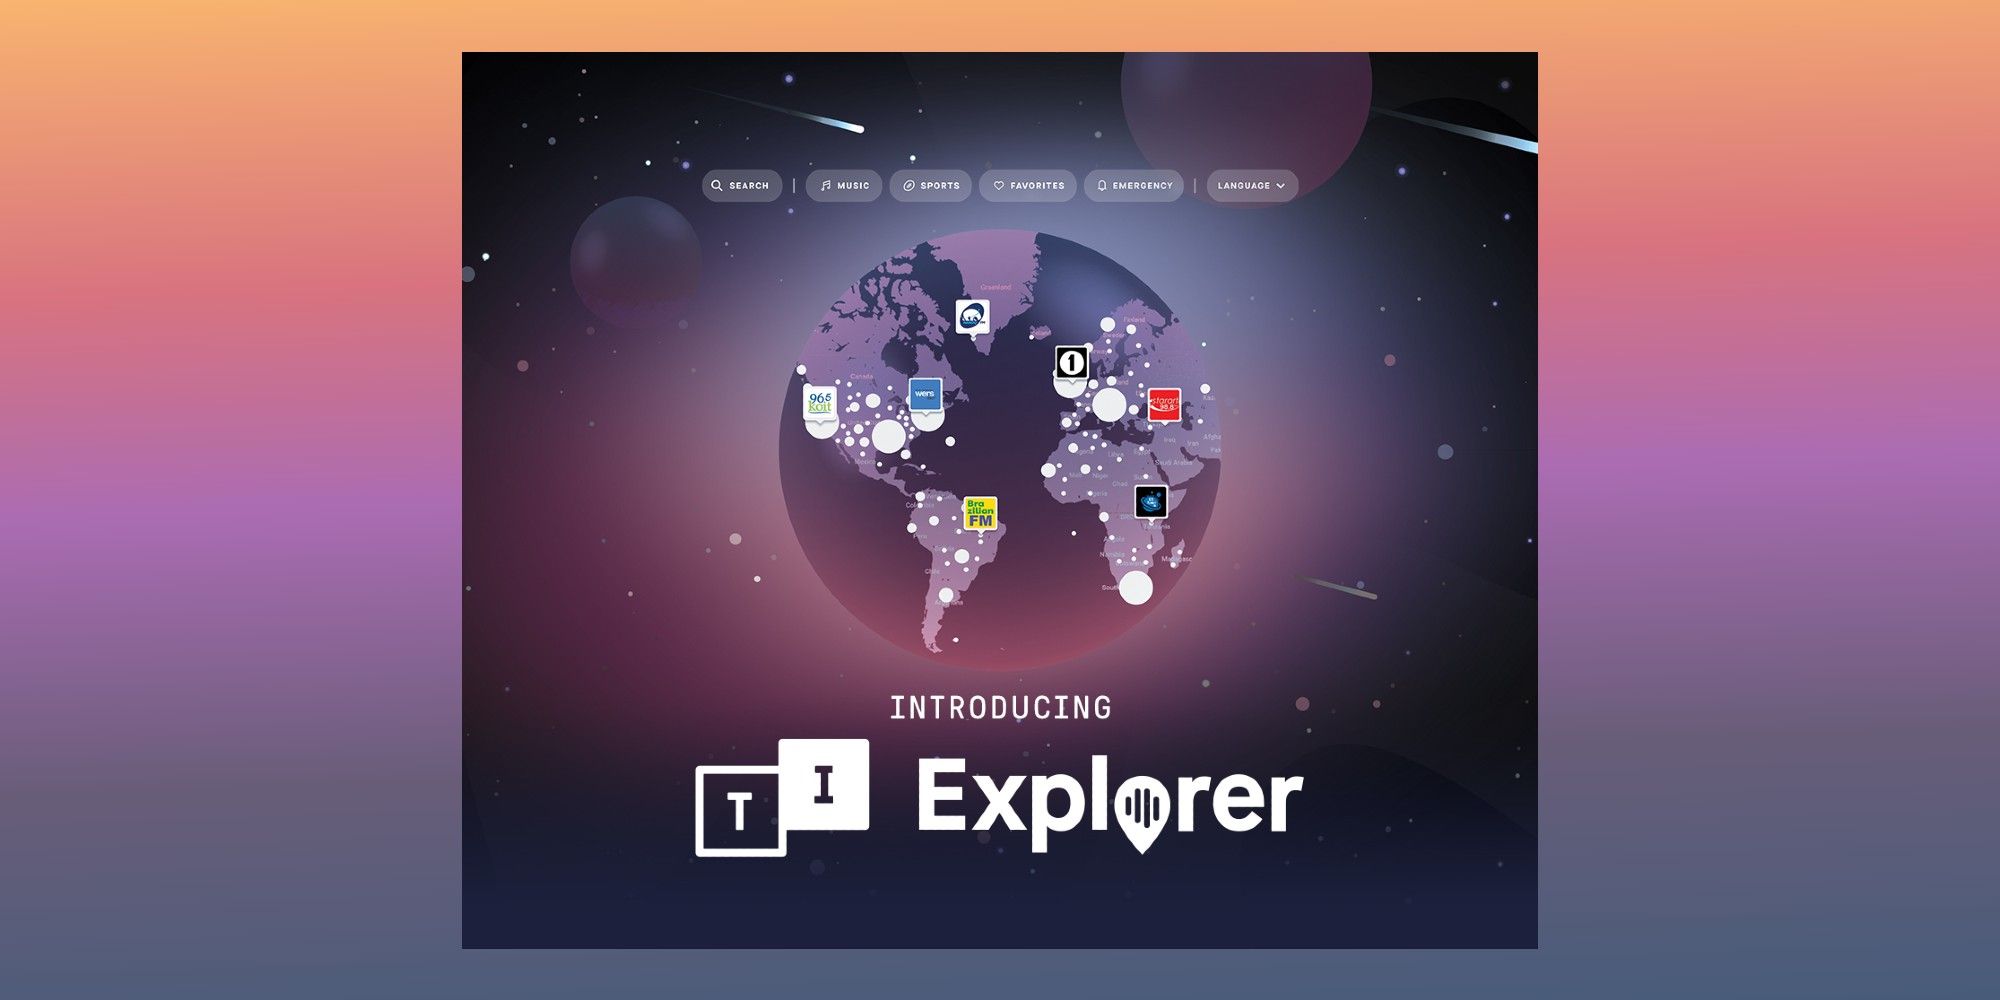 TuneIn Explorer: Cómo descubrir estaciones de radio locales en un mapa mundial